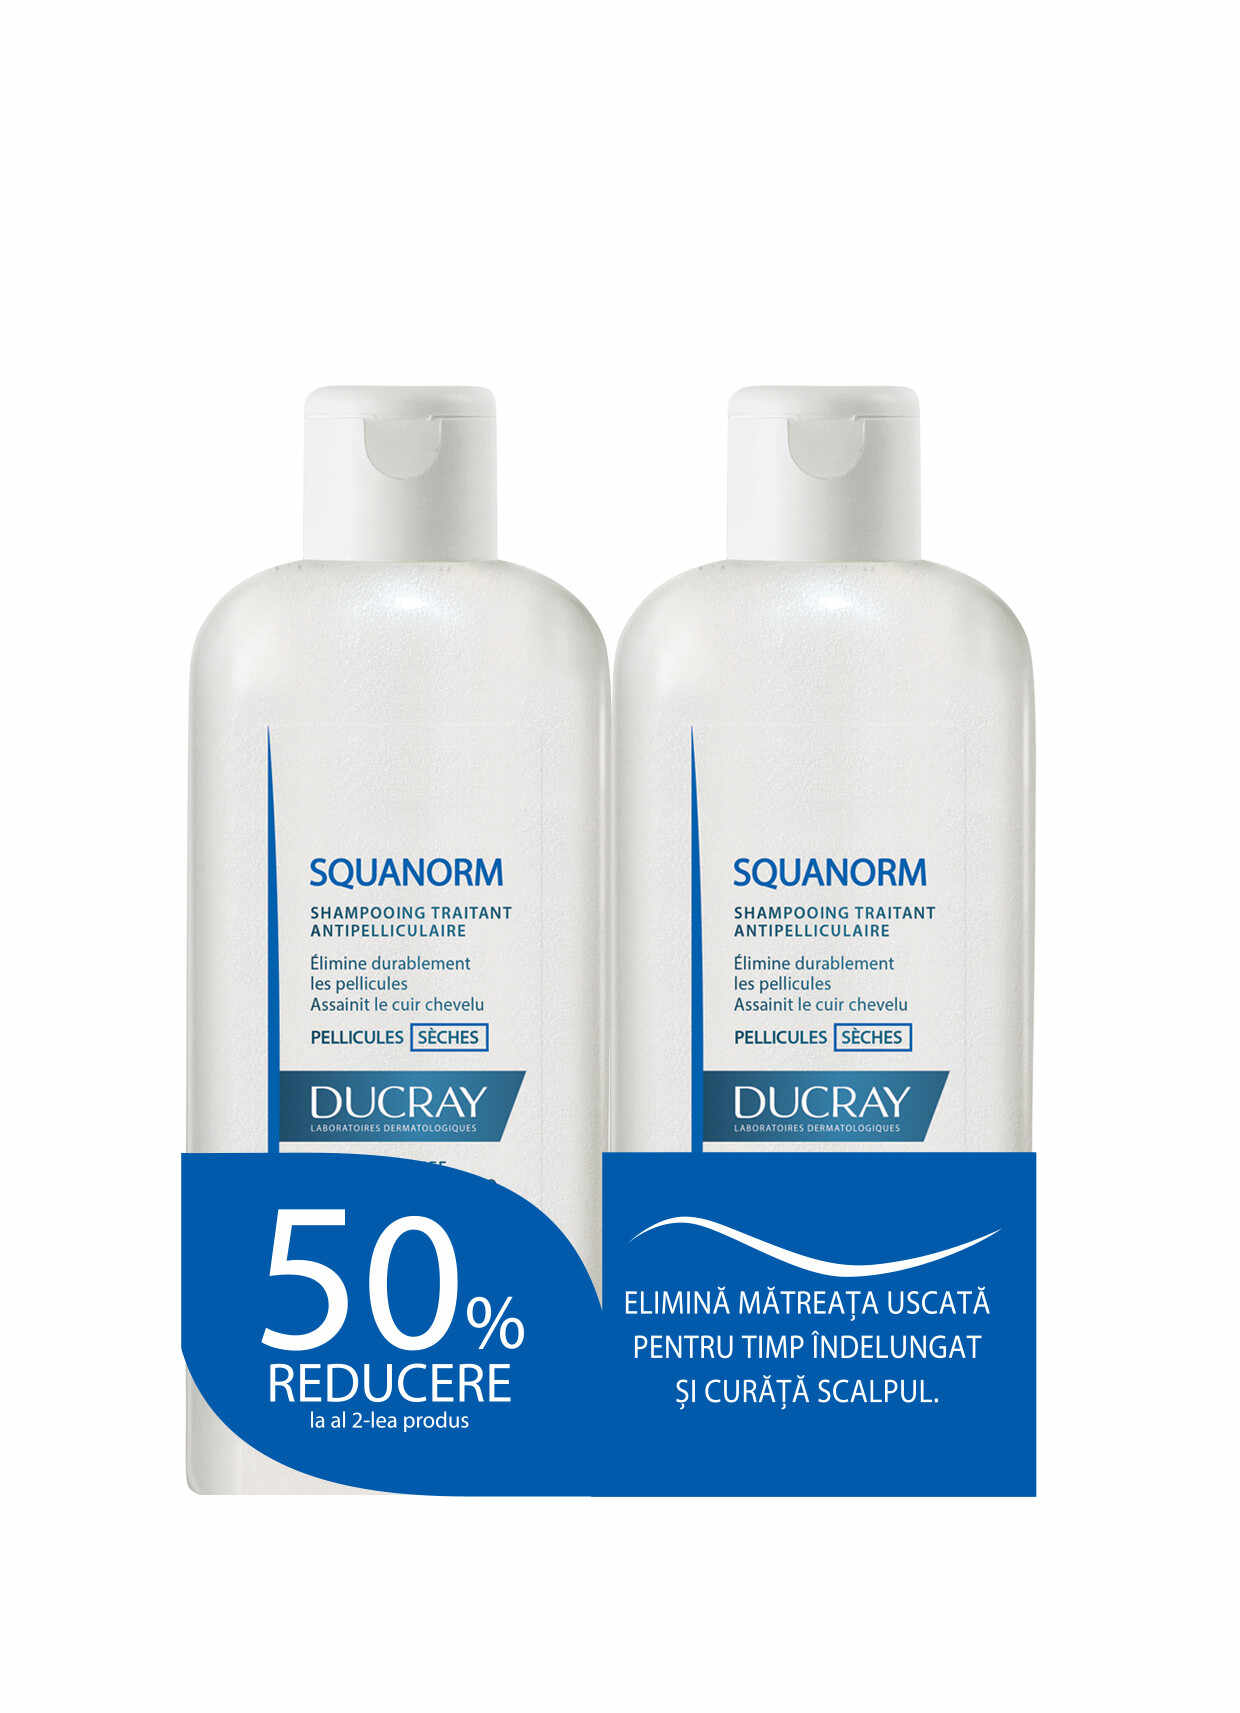 Ducray Squanorm 200 ml Matreata Uscata , Oferta - 50% la al doilea produs